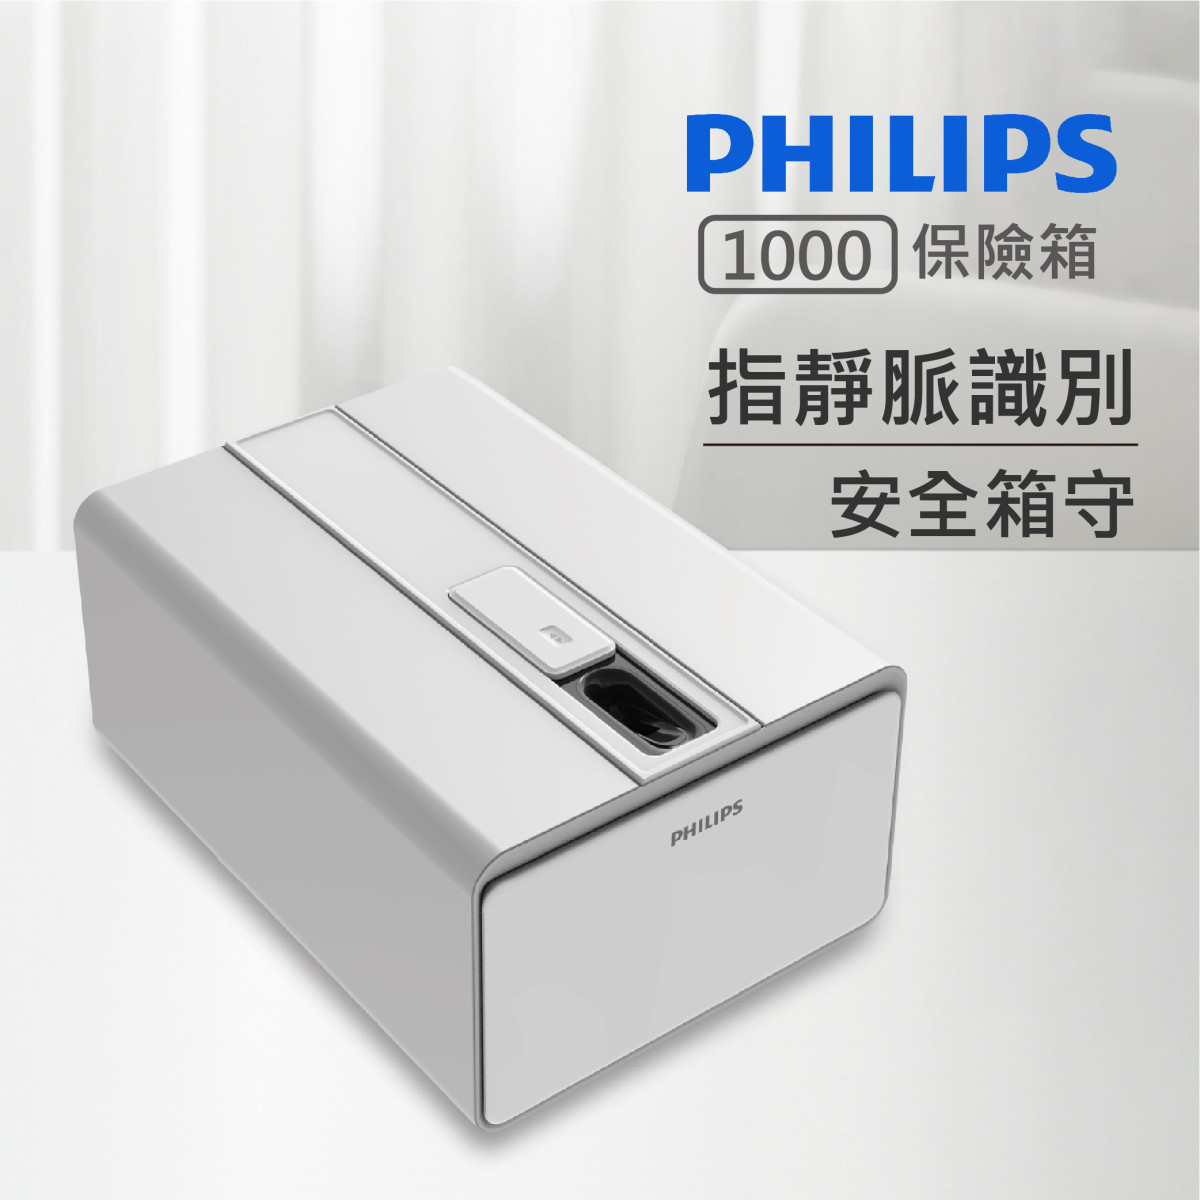 【PHILIPS】1000系列  指靜脈精準解鎖 智能保險箱